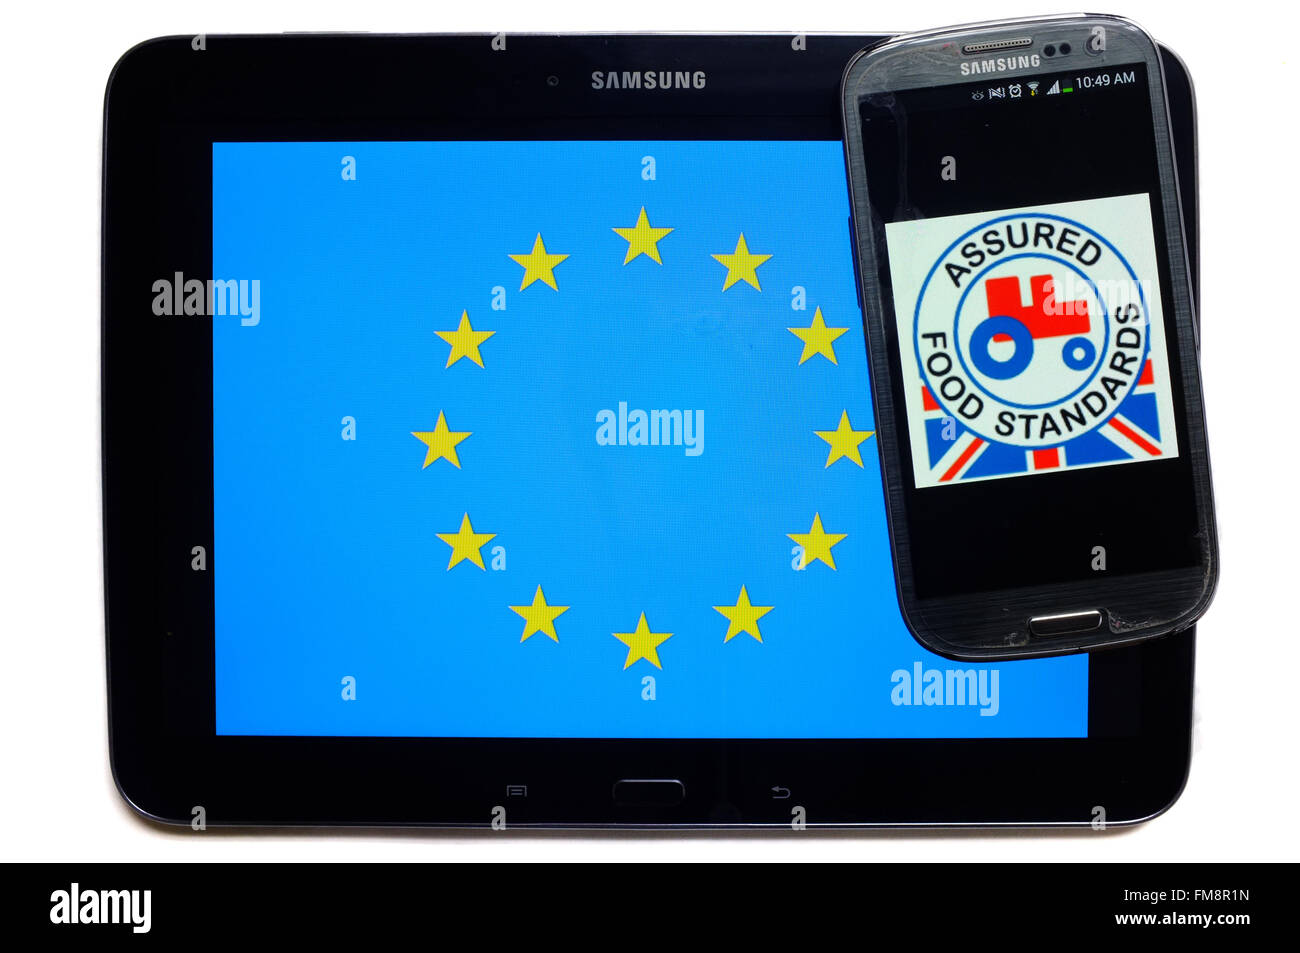 Un smartphone avec l'Assured Food Standards logo sur-le sur une tablette avec le drapeau de l'UE sur elle sur un fond blanc. Banque D'Images